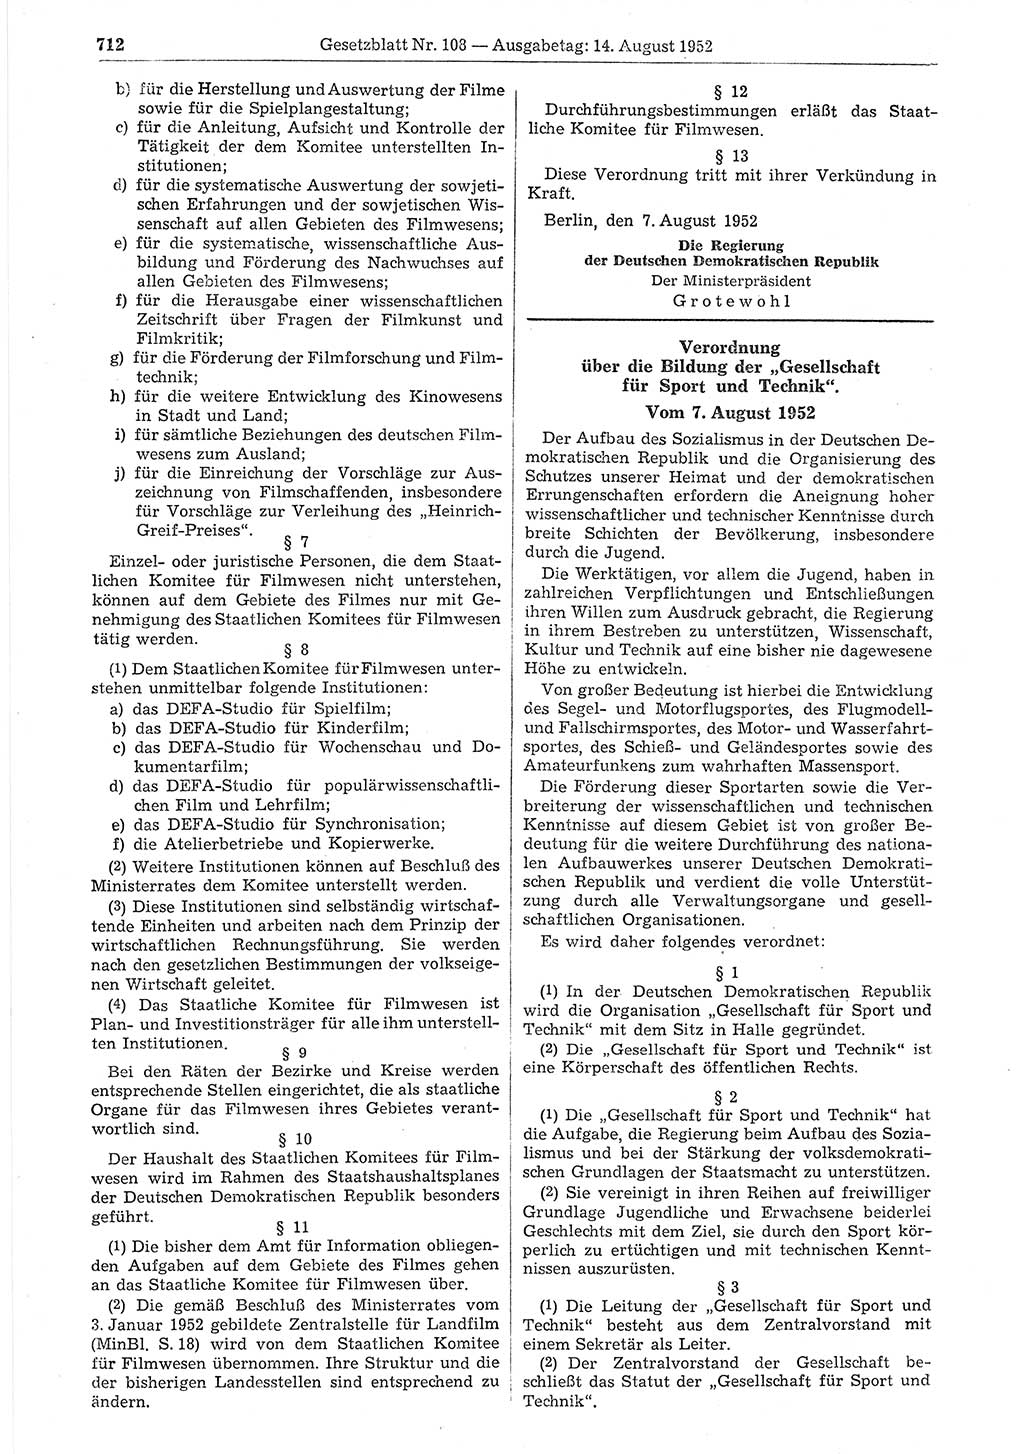 Gesetzblatt (GBl.) der Deutschen Demokratischen Republik (DDR) 1952, Seite 712 (GBl. DDR 1952, S. 712)